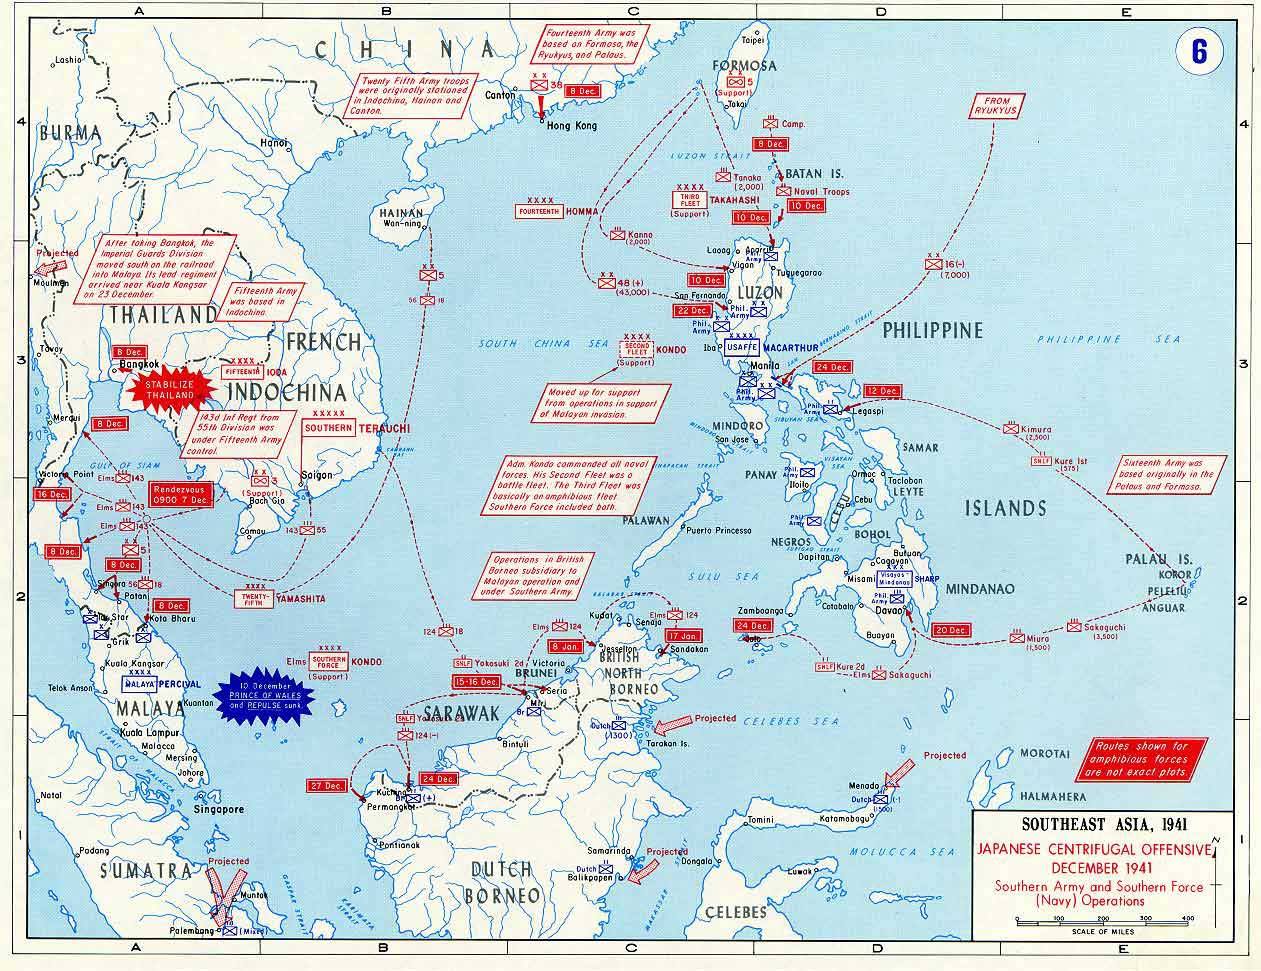 Carte de l'offensive centrifuge japonaise en 1941 -- Source: Académie militaire de West Point. -